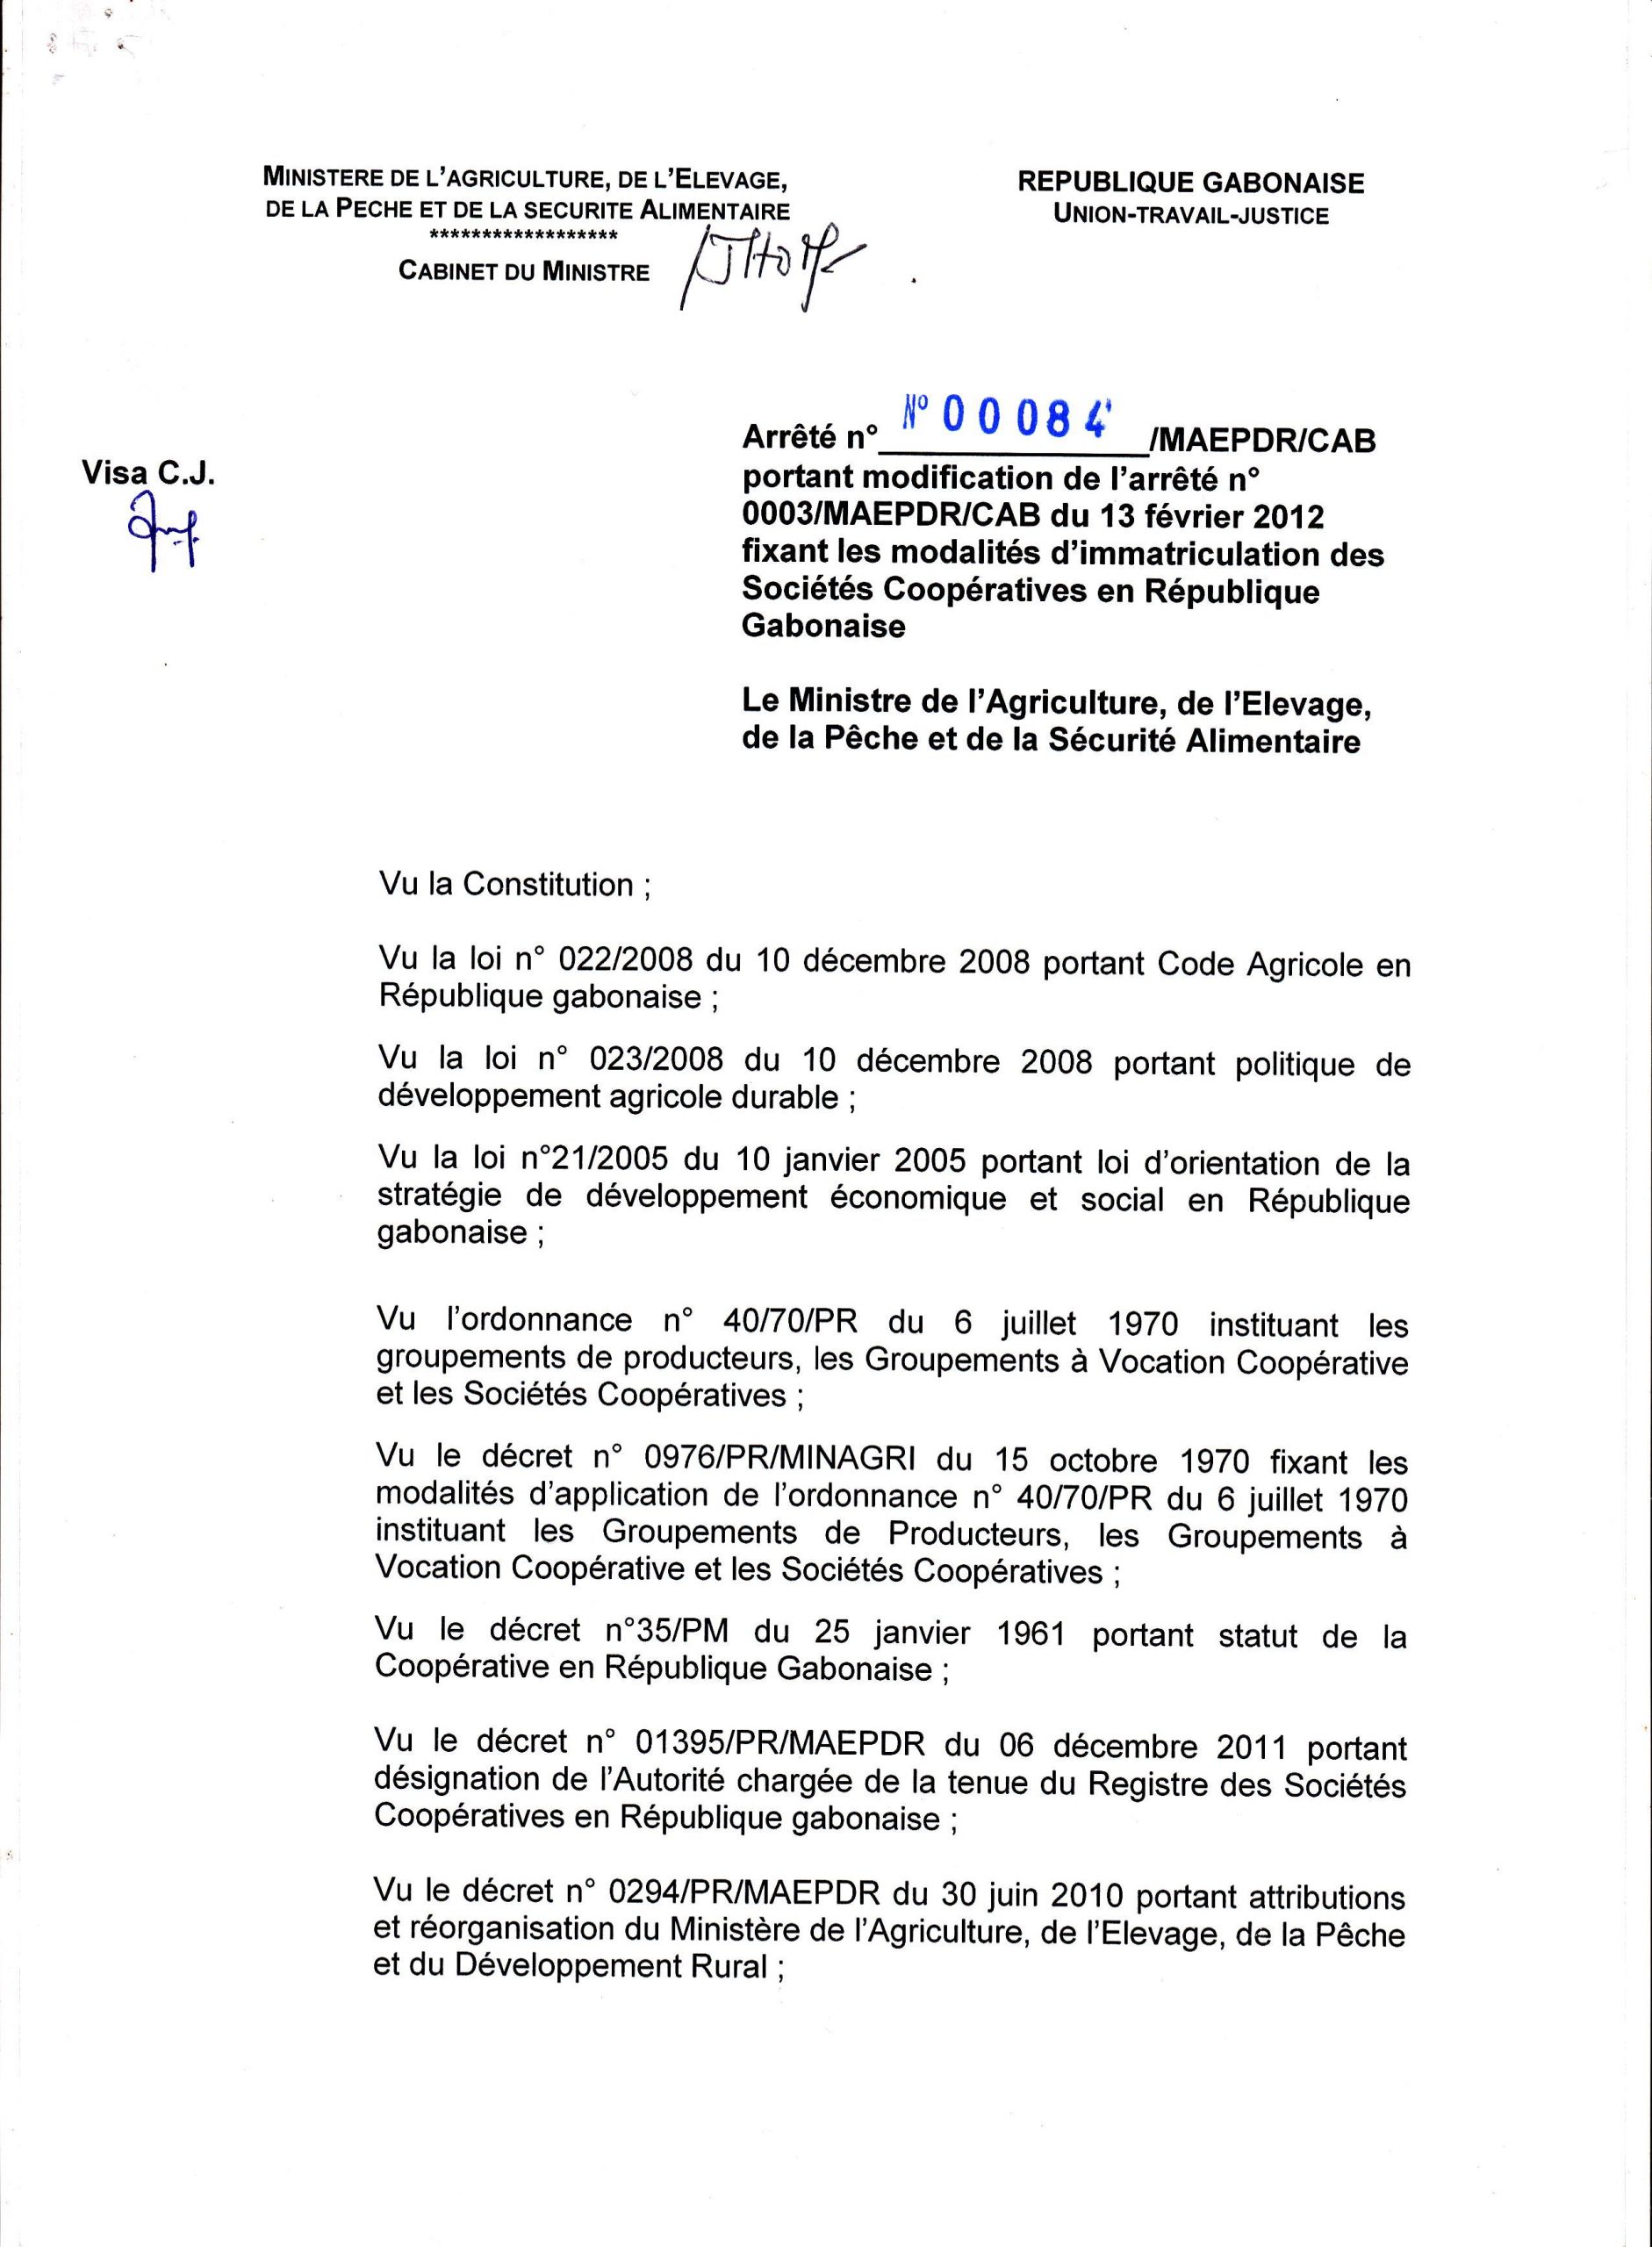 Immatriculation des Sociétés Coopératives en République Gabonaise